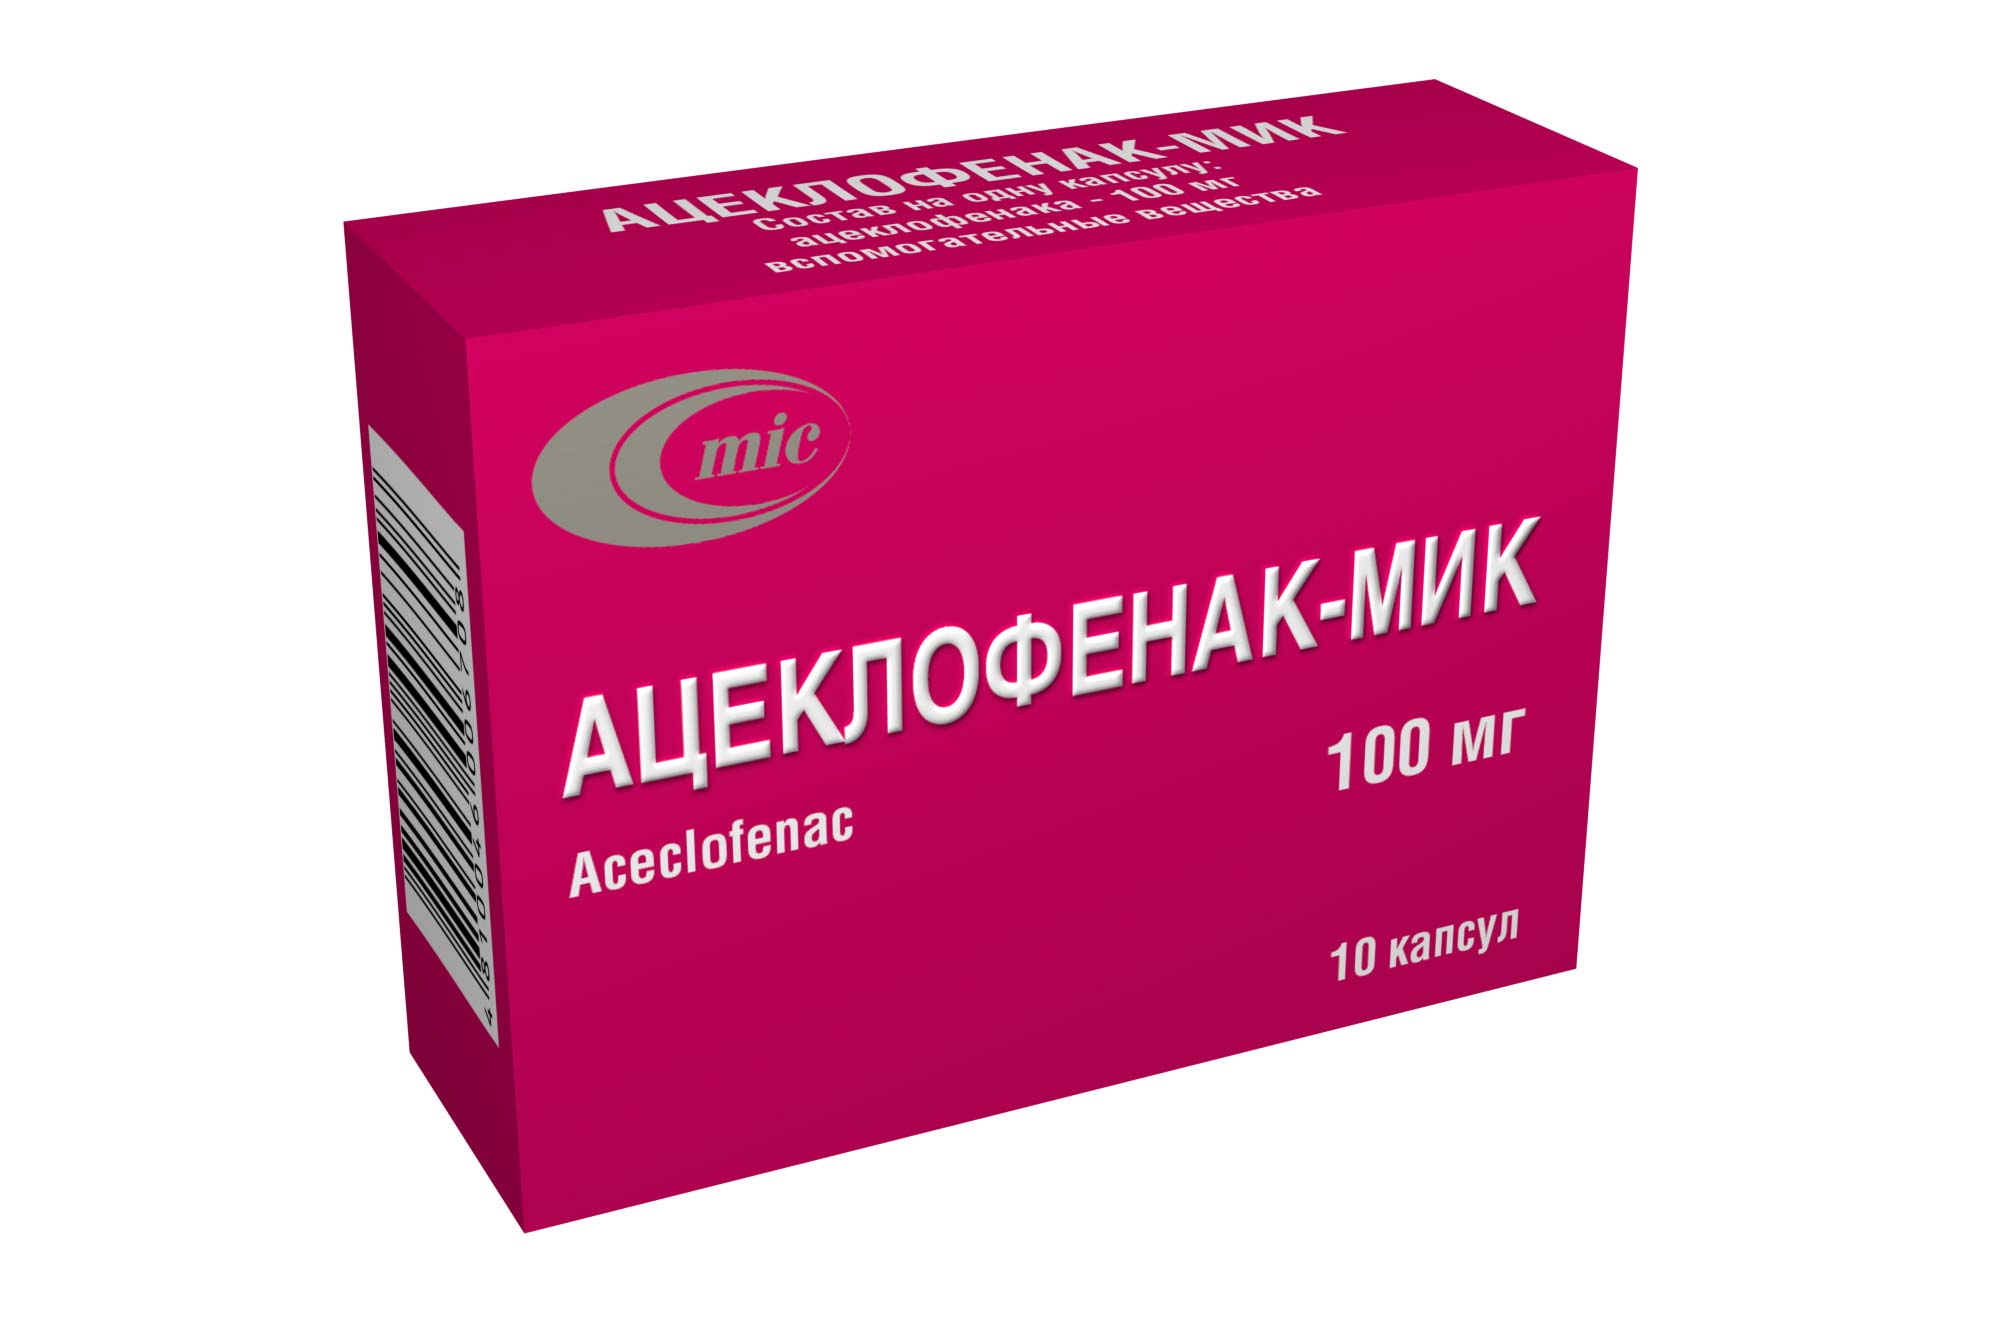 Зарегистрировано новое лекарственное средство АЦЕКЛОФЕНАК-МИК